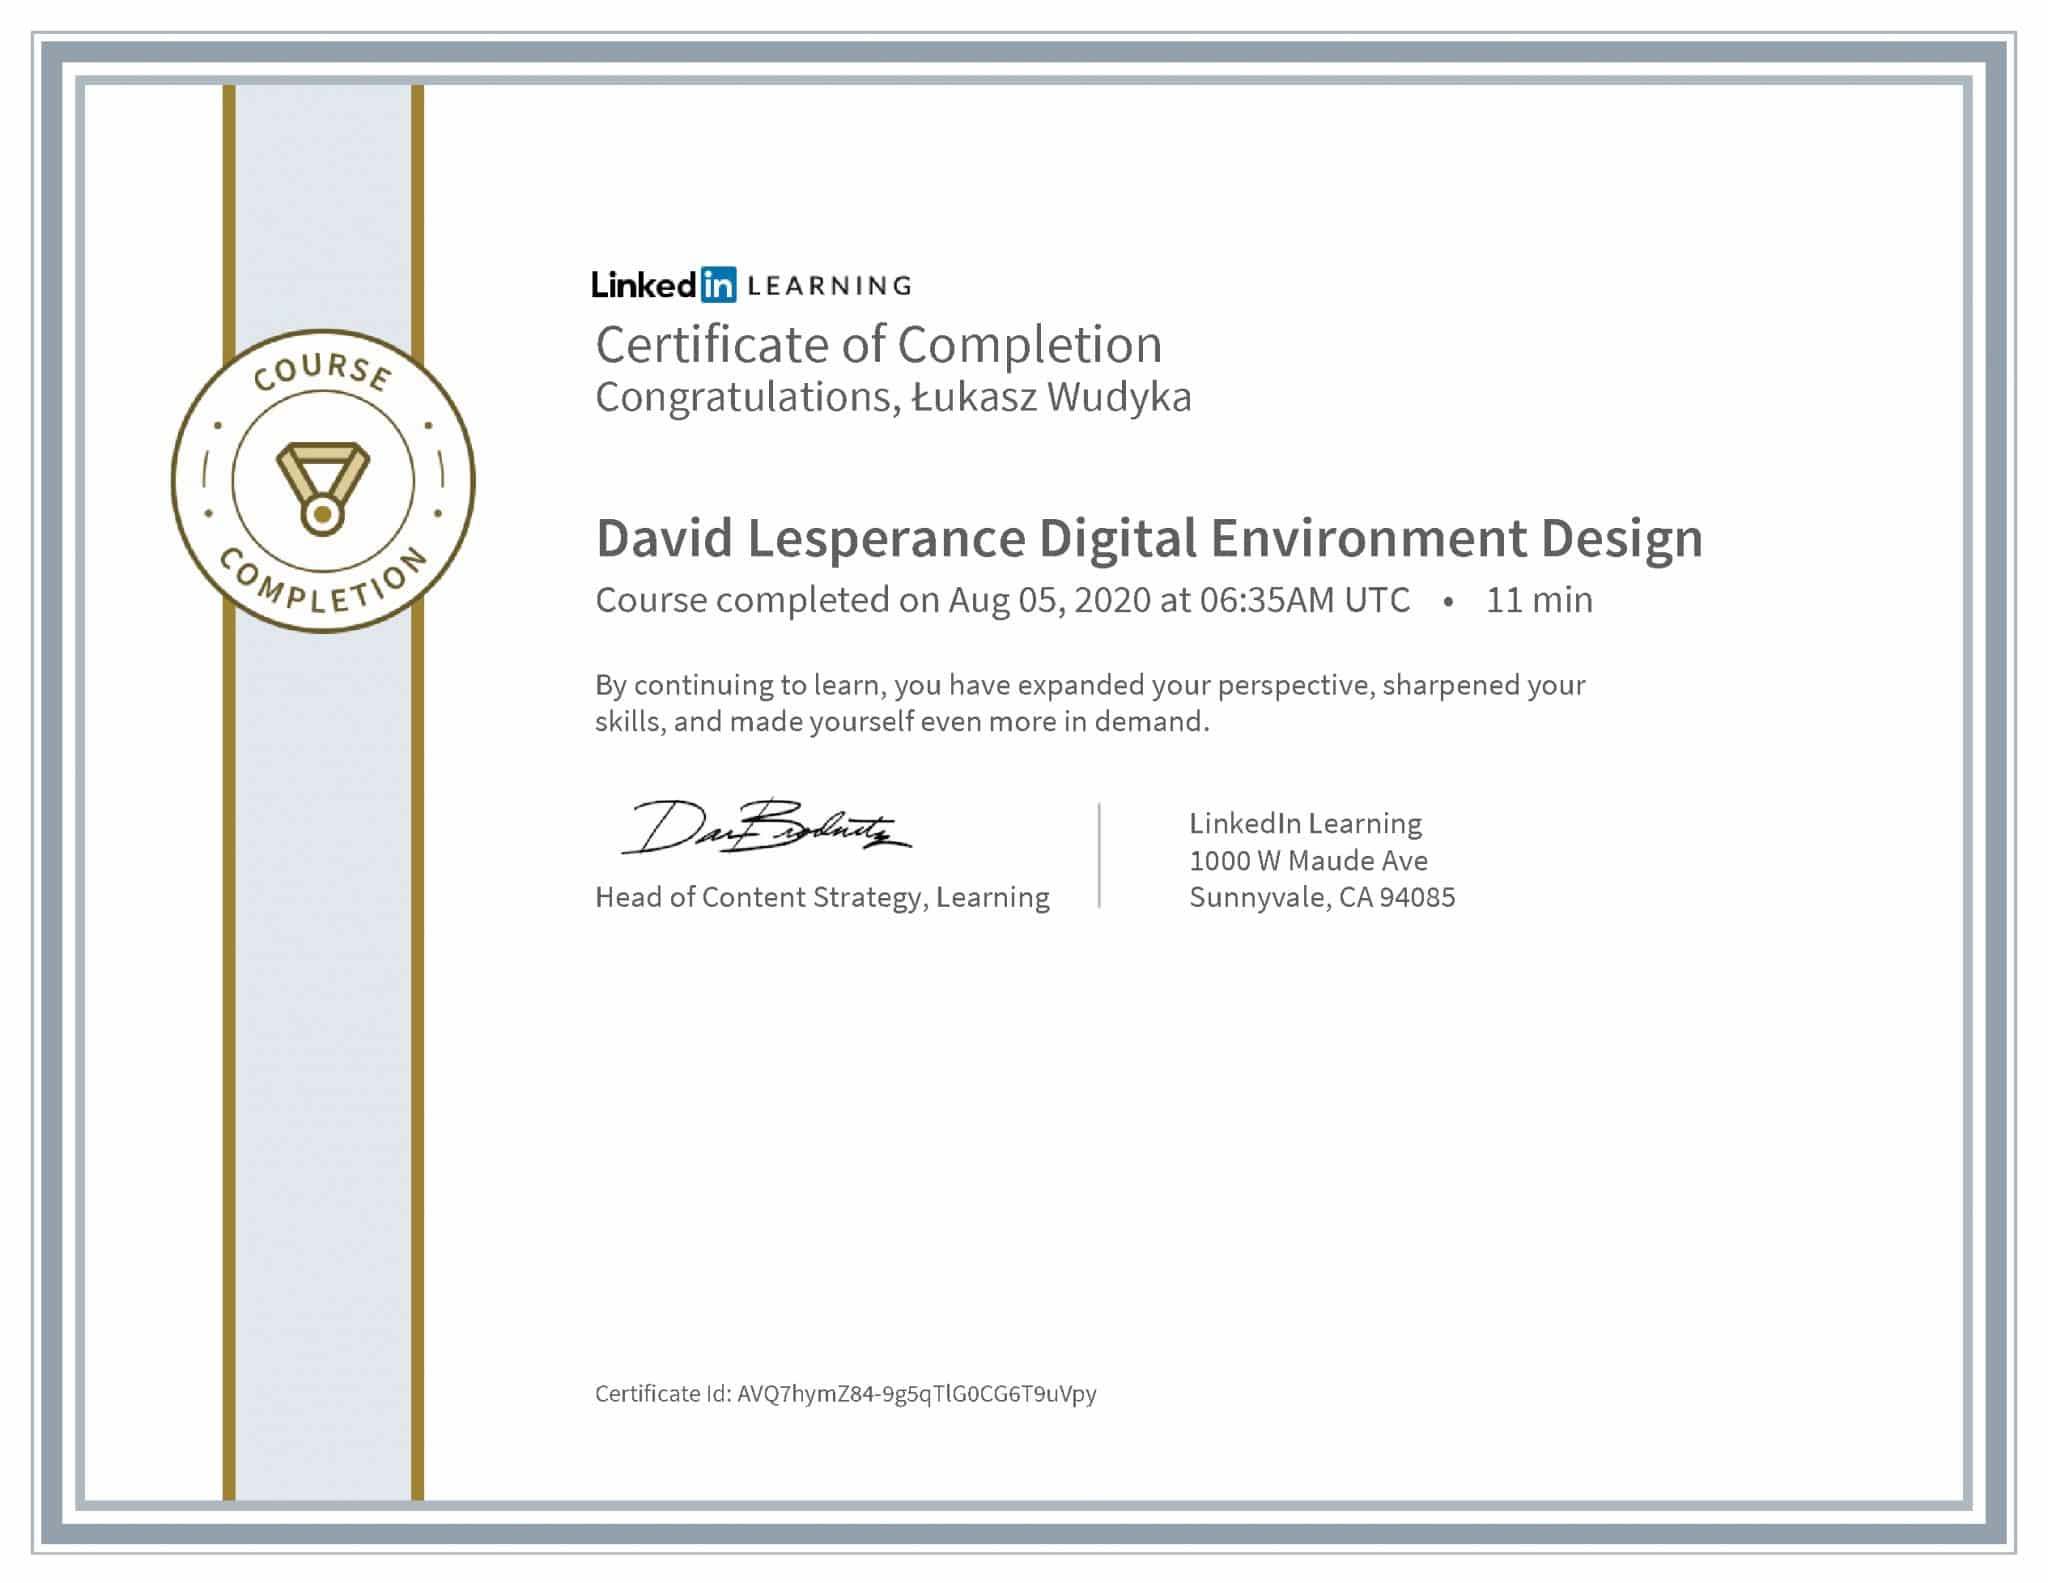 Łukasz Wudyka certyfikat LinkedIn David Lesperance Digital Environment Design